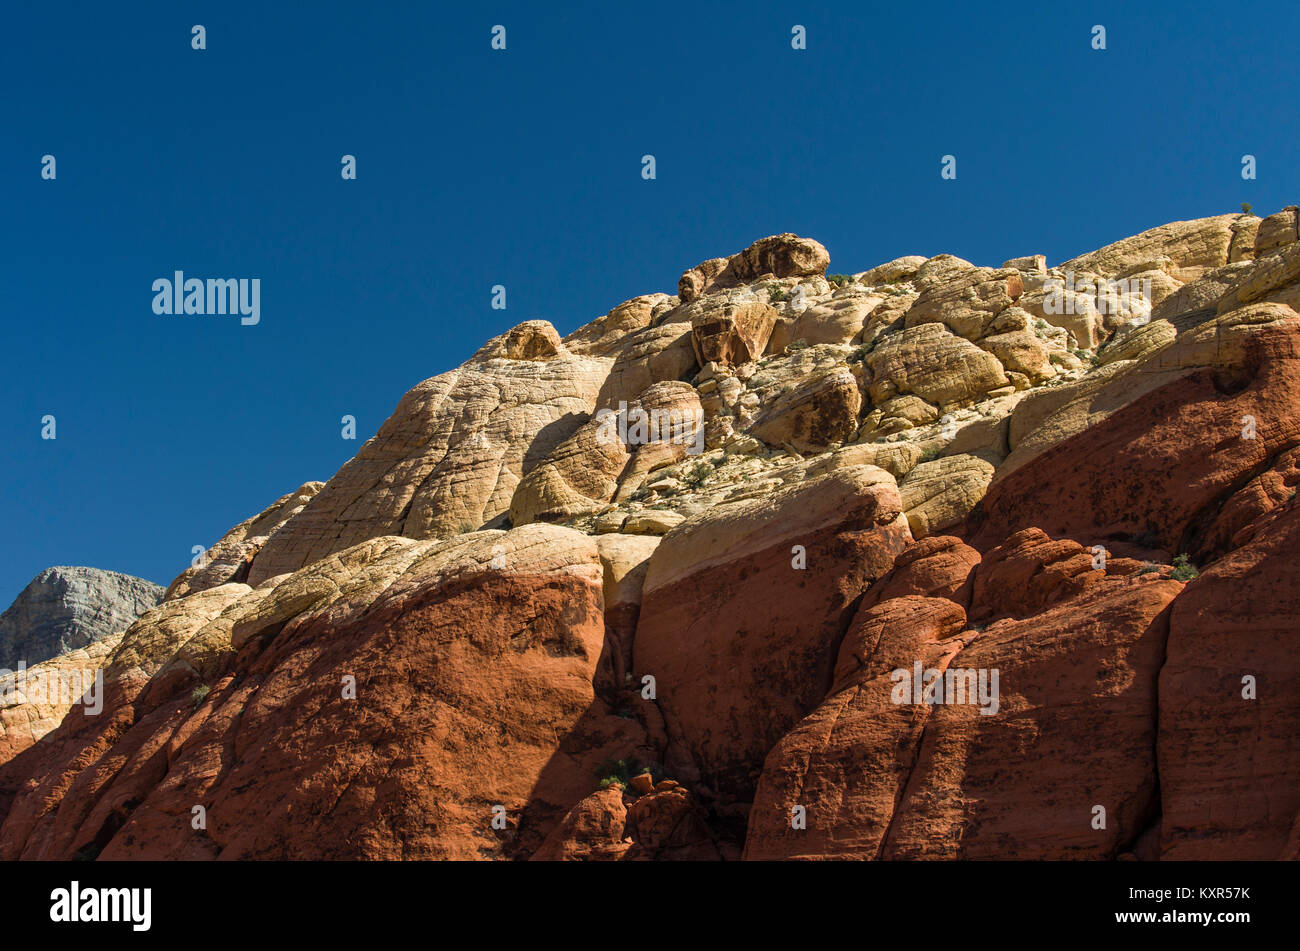 Capas de piedra arenisca de diferentes colores sobre un acantilado rocoso en el Area de Conservación Nacional de Red Rock Canyon. Foto de stock